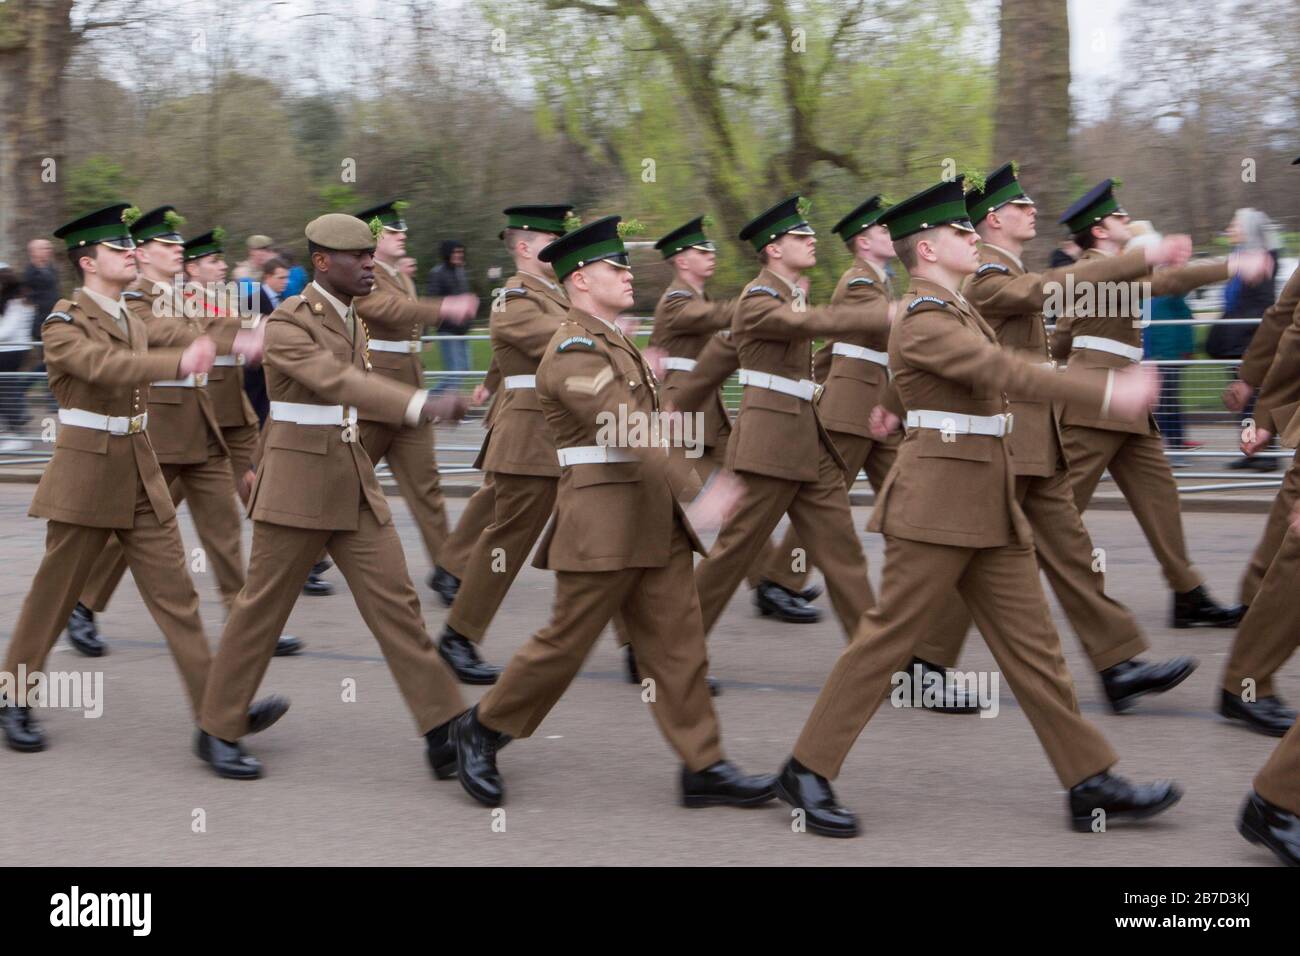 Die Irish Guards marschieren während der St Patrick's Day Parade auf dem Weg zum Guards Memorial im St James's Park, London, den Birdcage Walk hinunter. Stockfoto